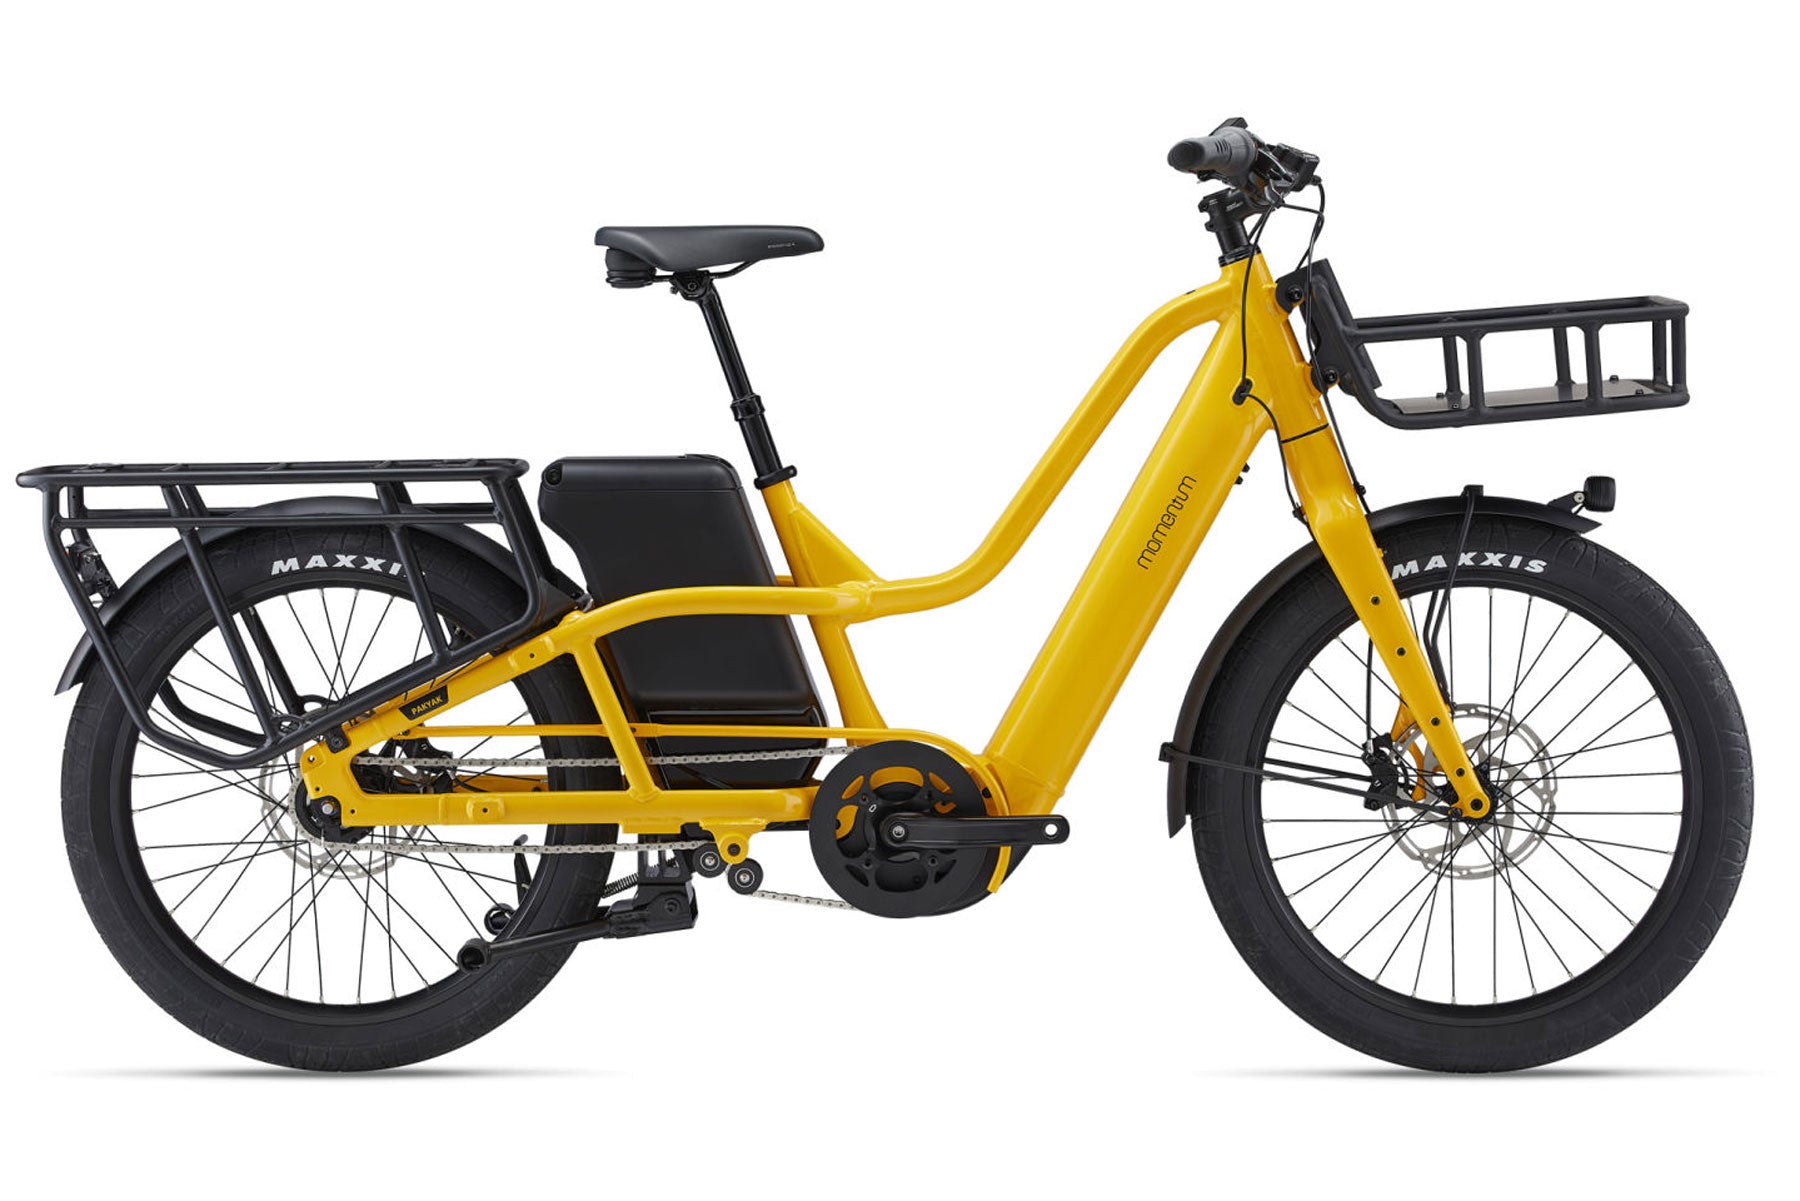 yellow momentum pakyak cargo bike